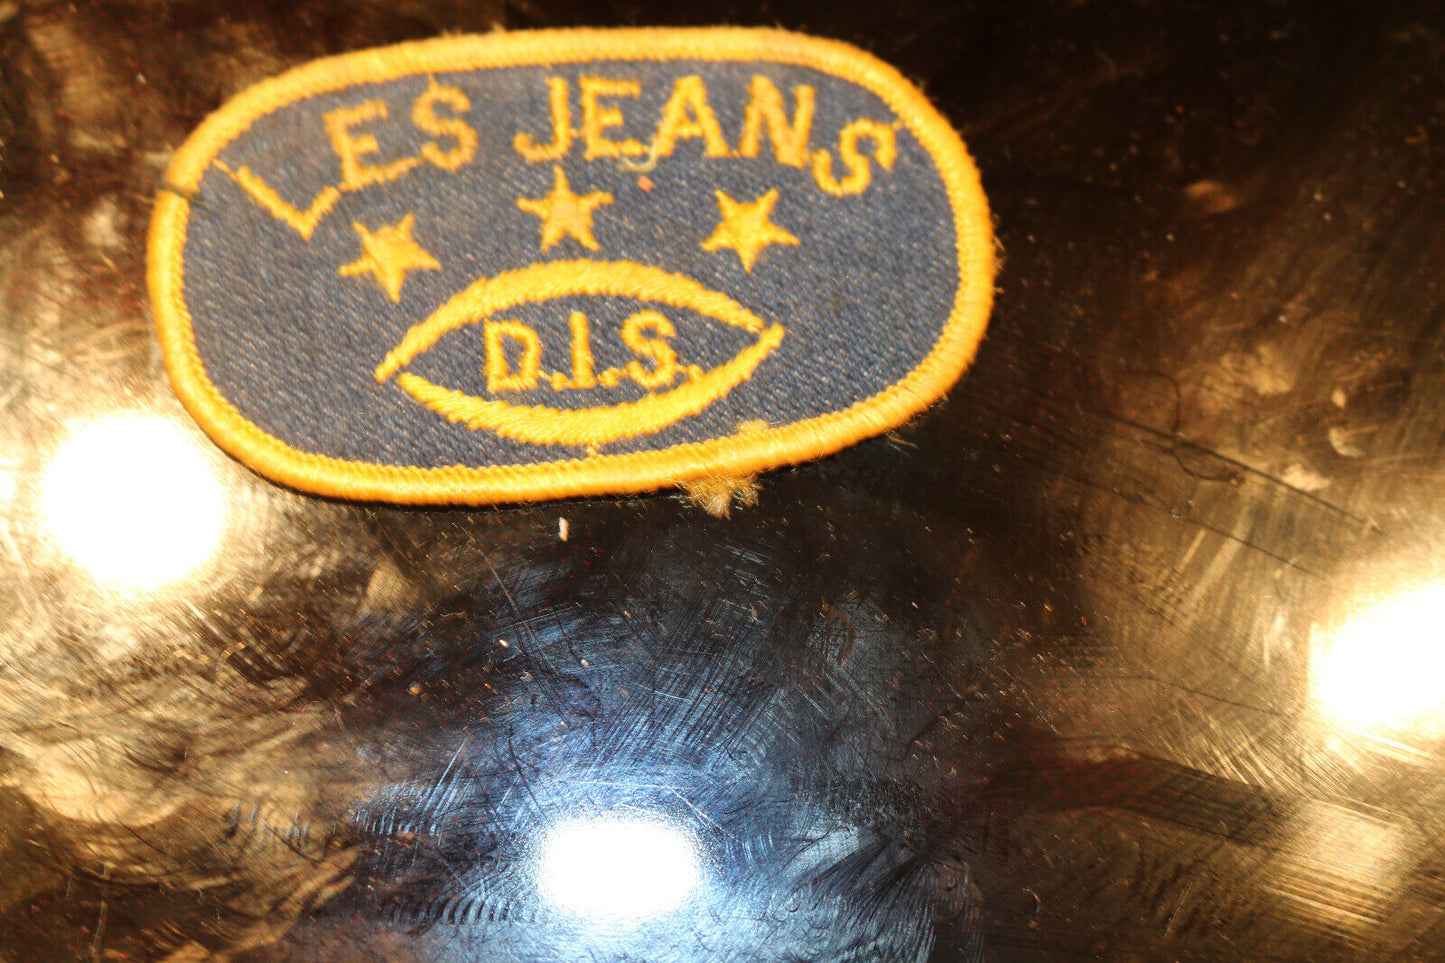 Vintage Shoulder Patche Souvenir Les Jeans D.I.S. 3 Stars